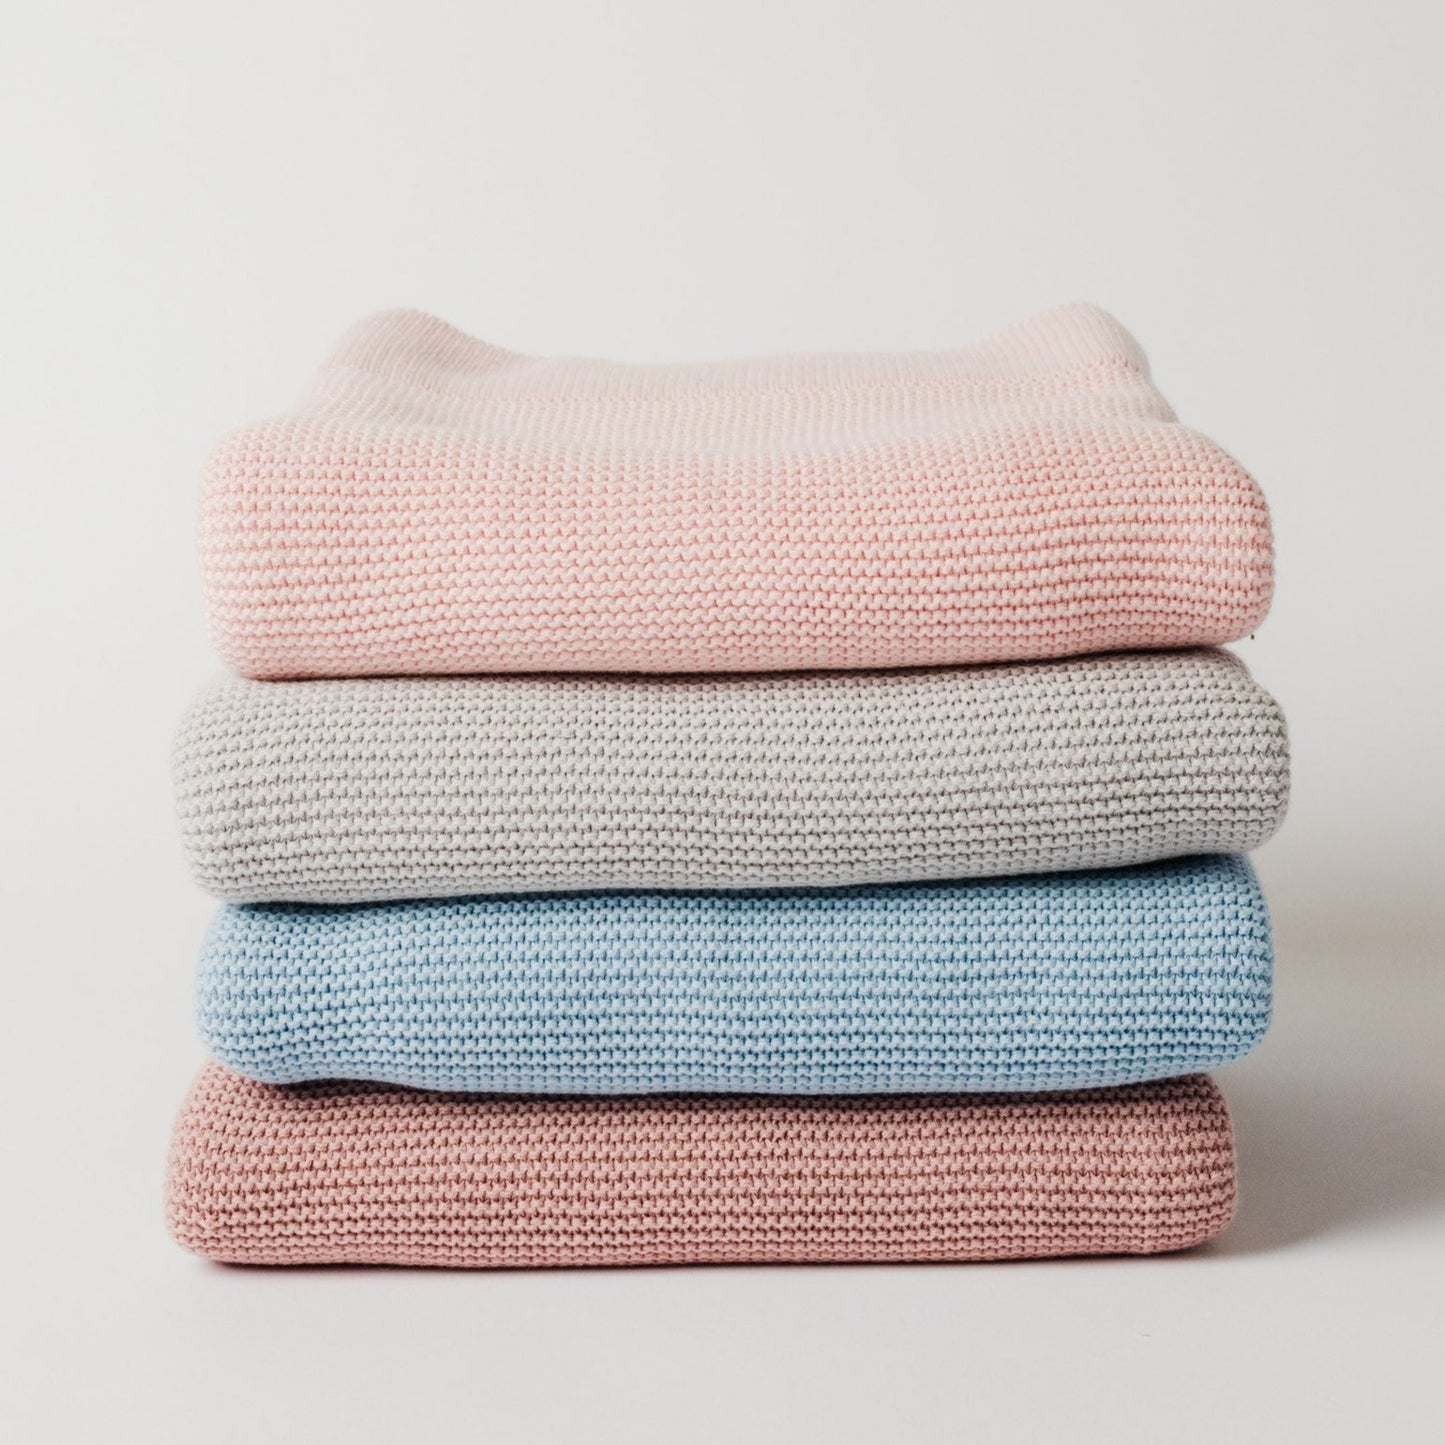 Indigo Sweater Knit Cotton Baby Blanket